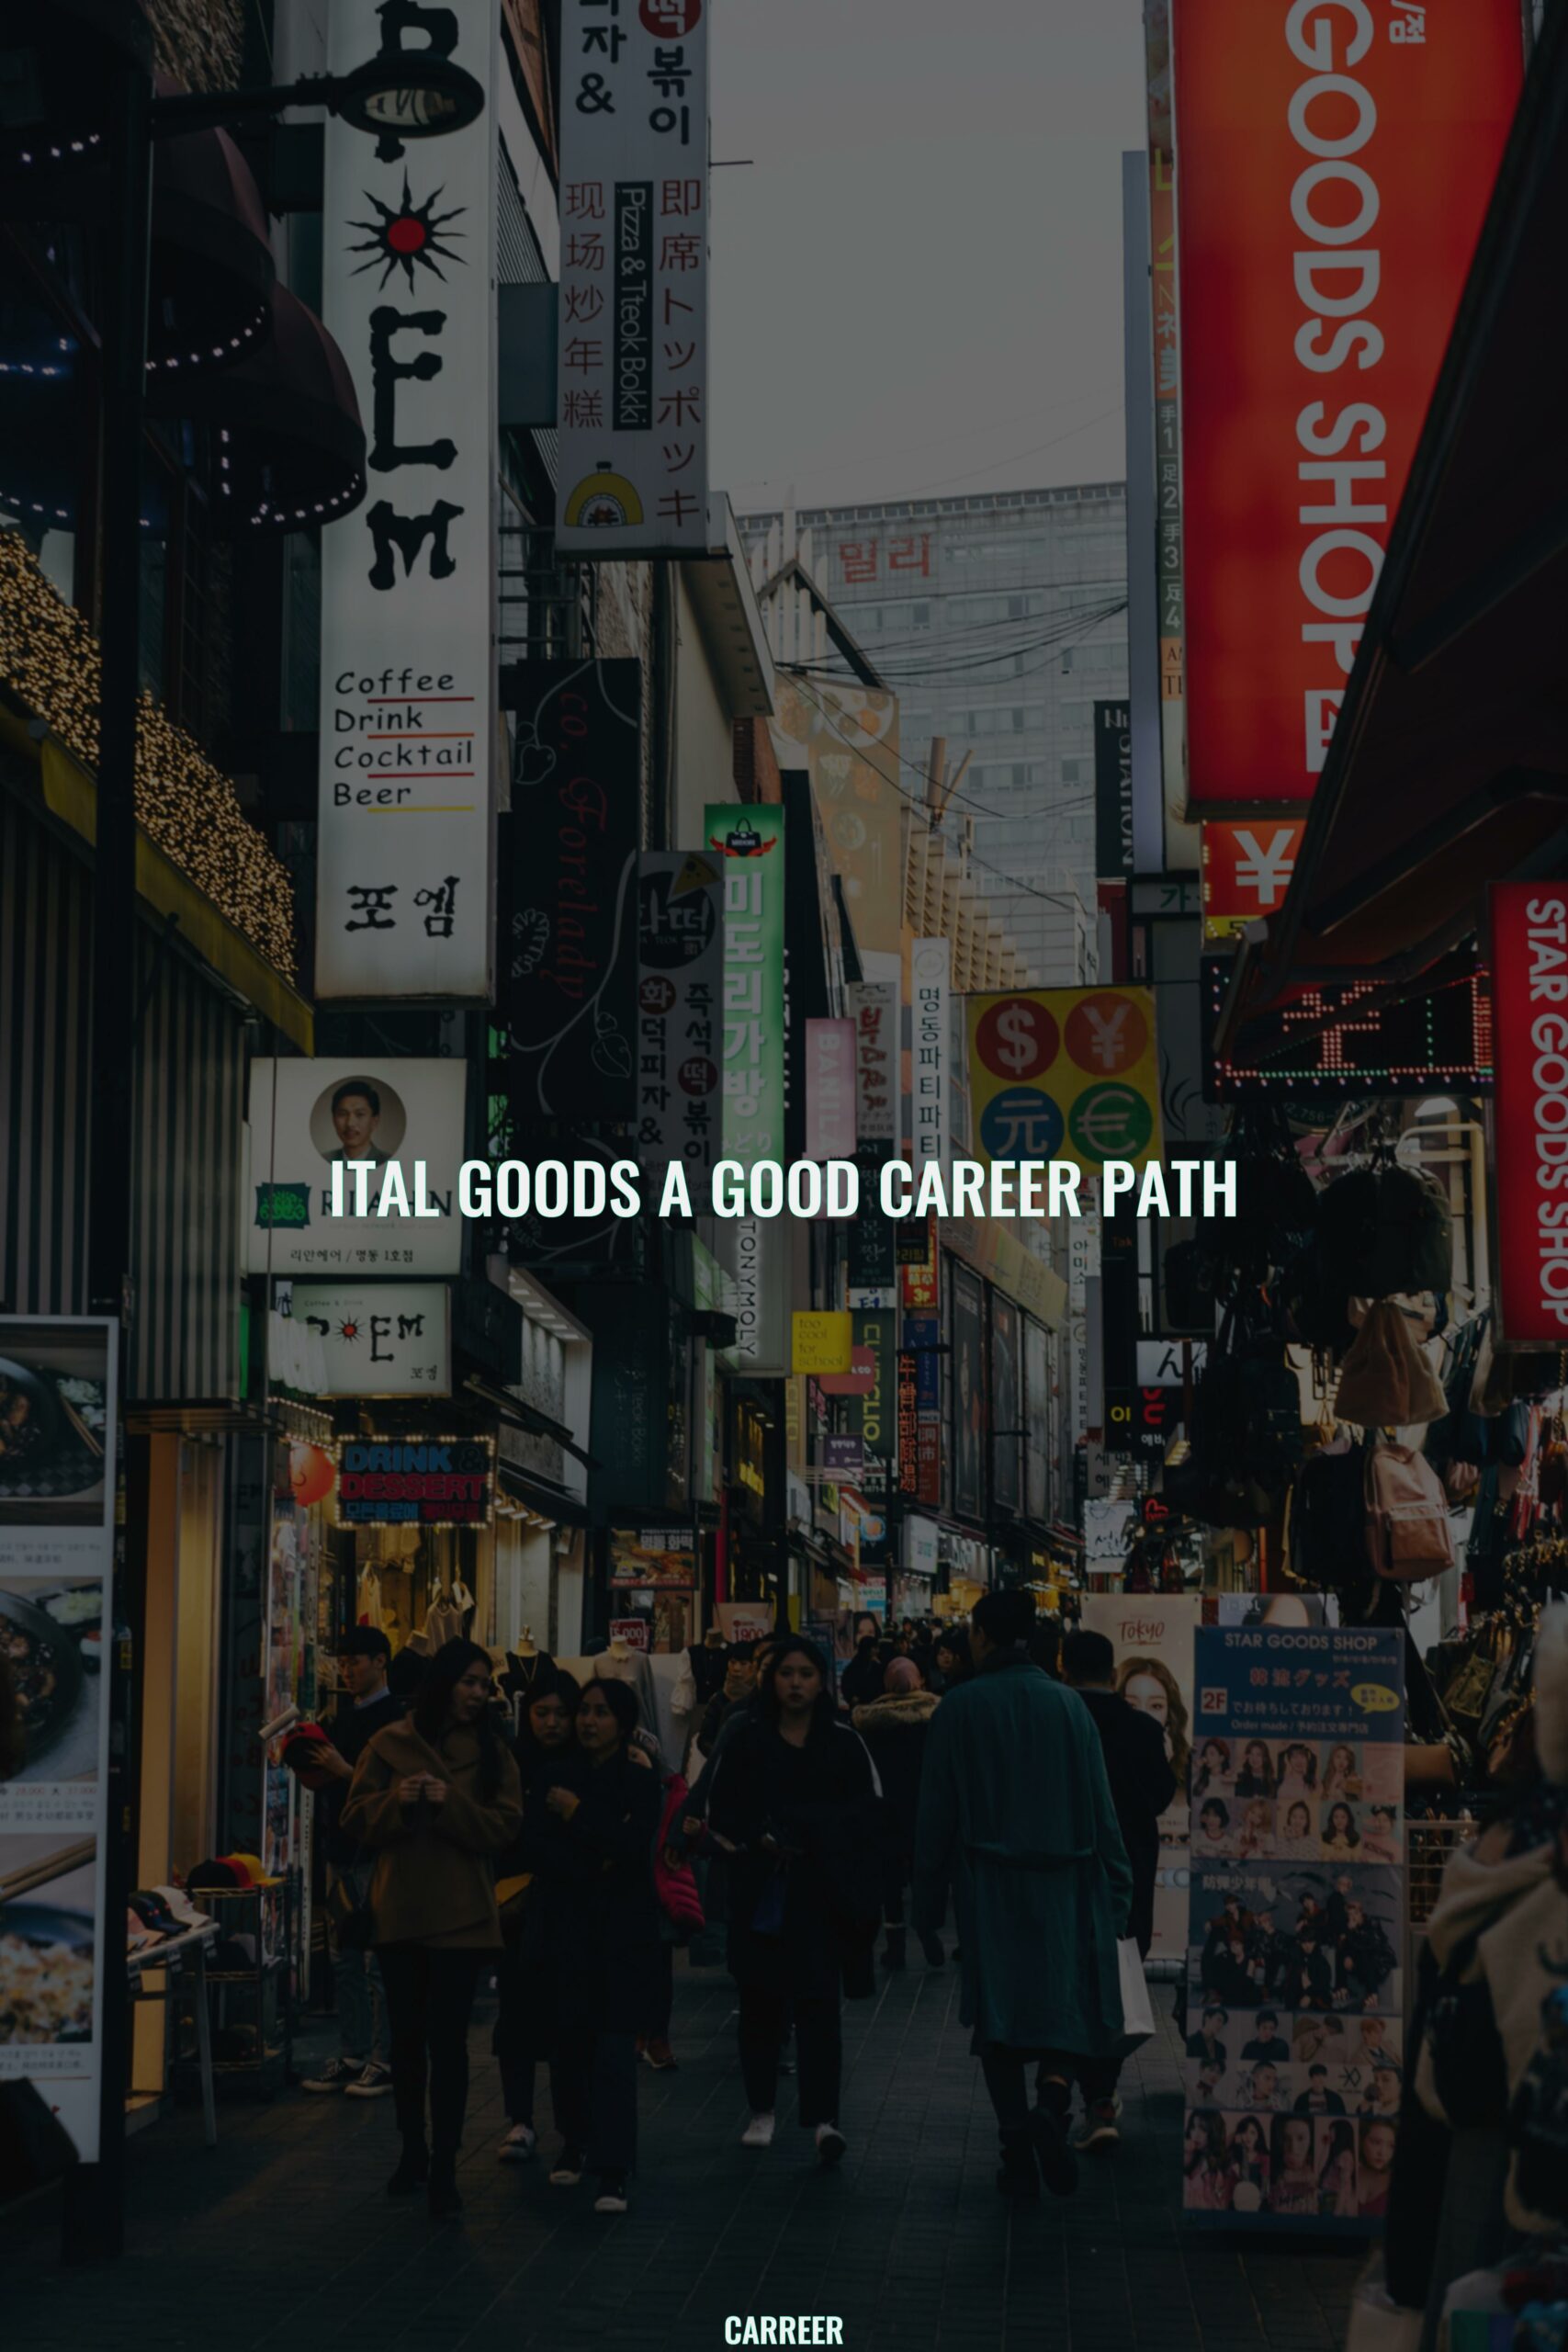 Ital goods a good career path